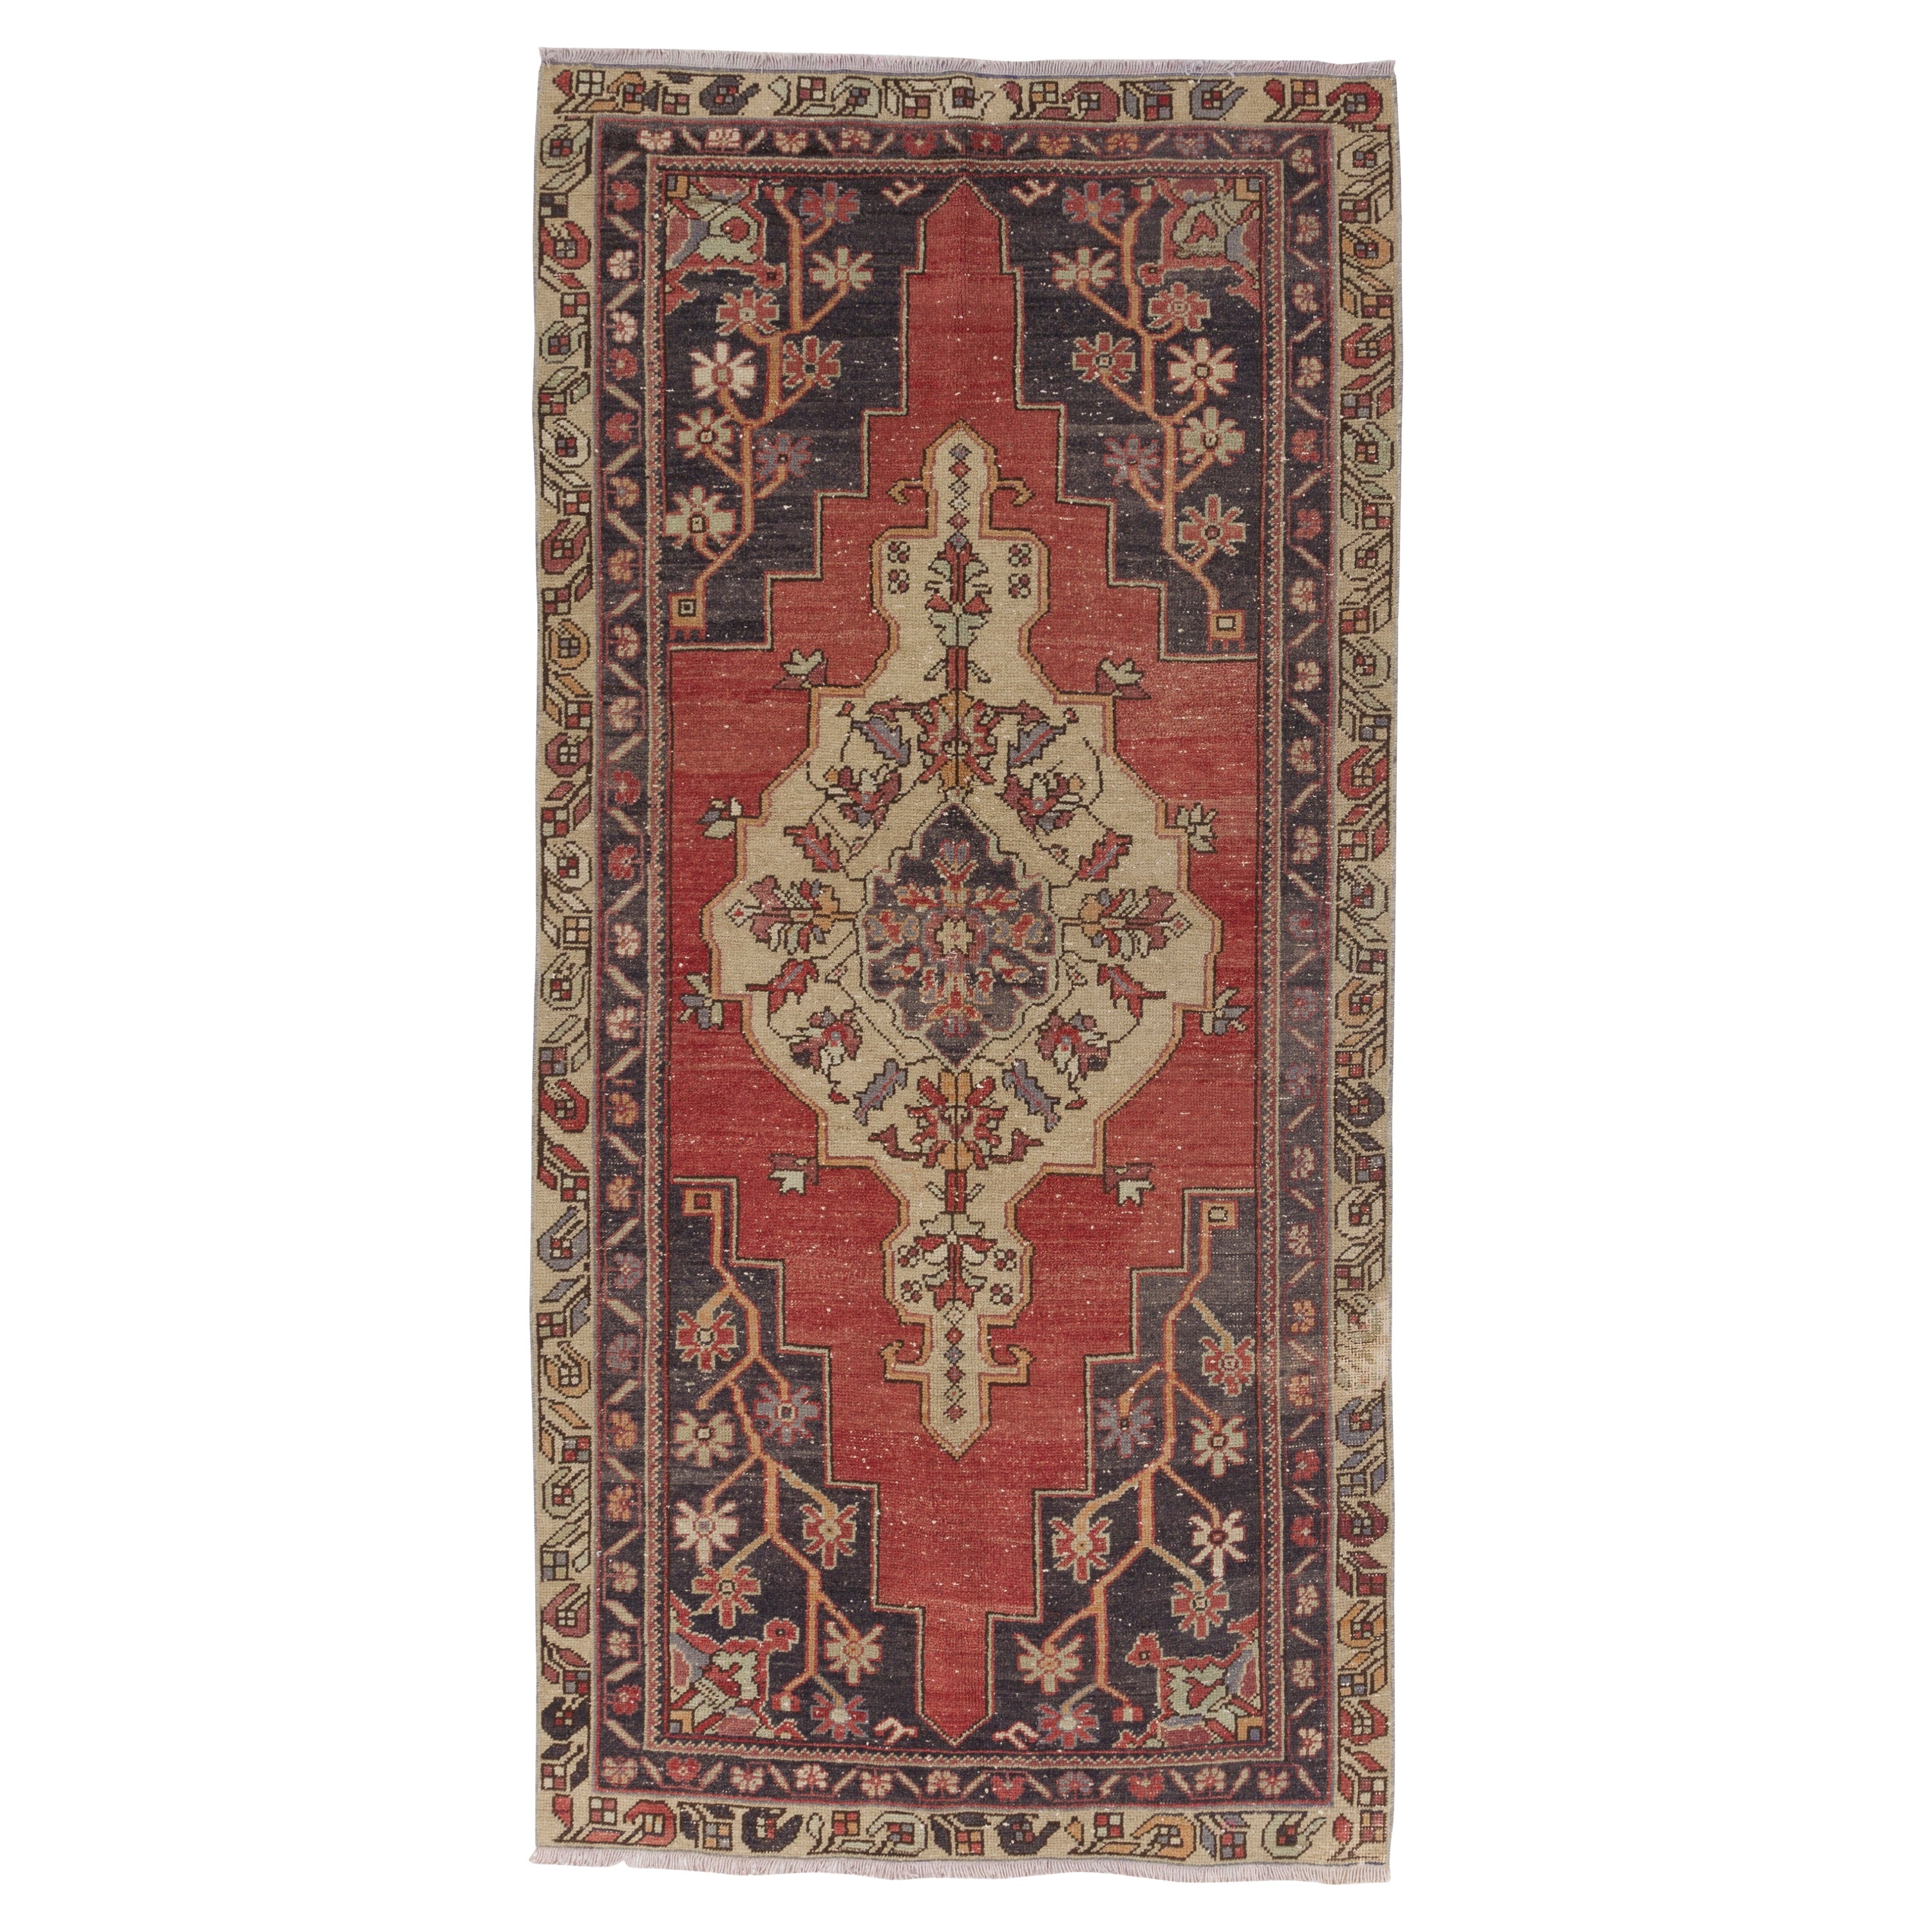 Tapis de village turc vintage fait à la main de 4 x 8,4 pieds, tapis traditionnel en laine orientale